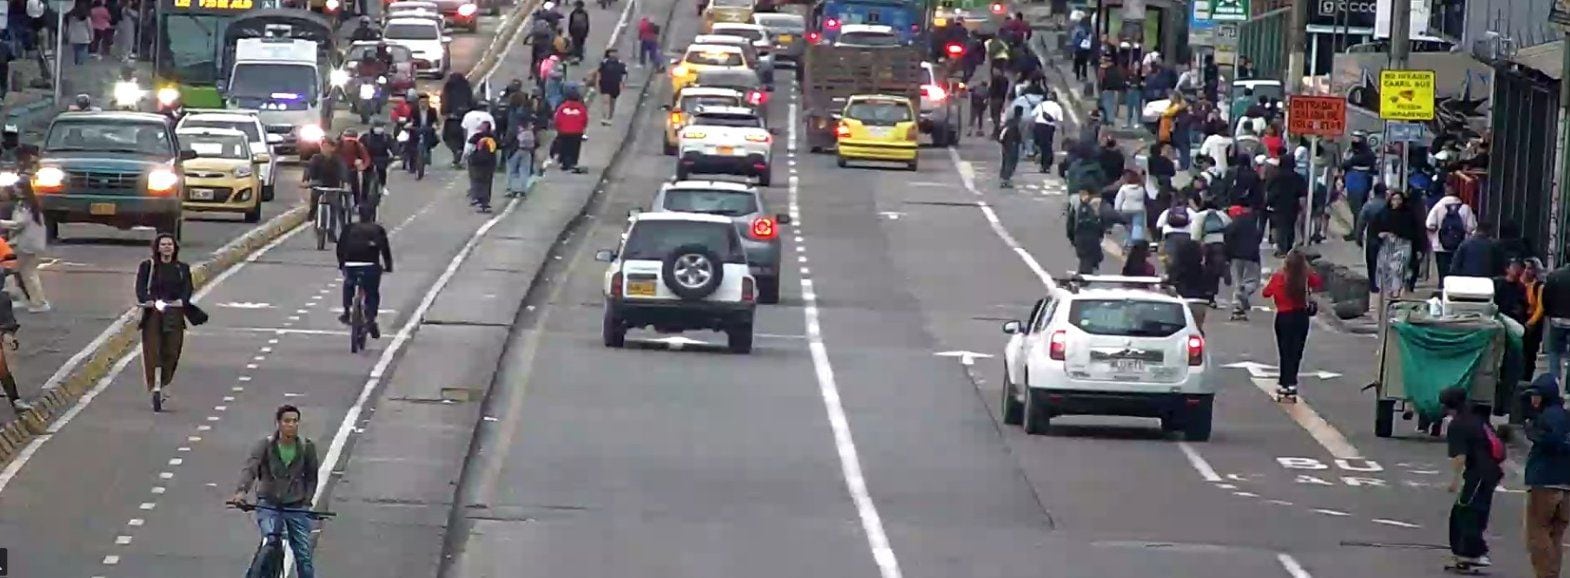 Los conductores han reportado demoras en su trayecto - crédito Movilidad Bogotá